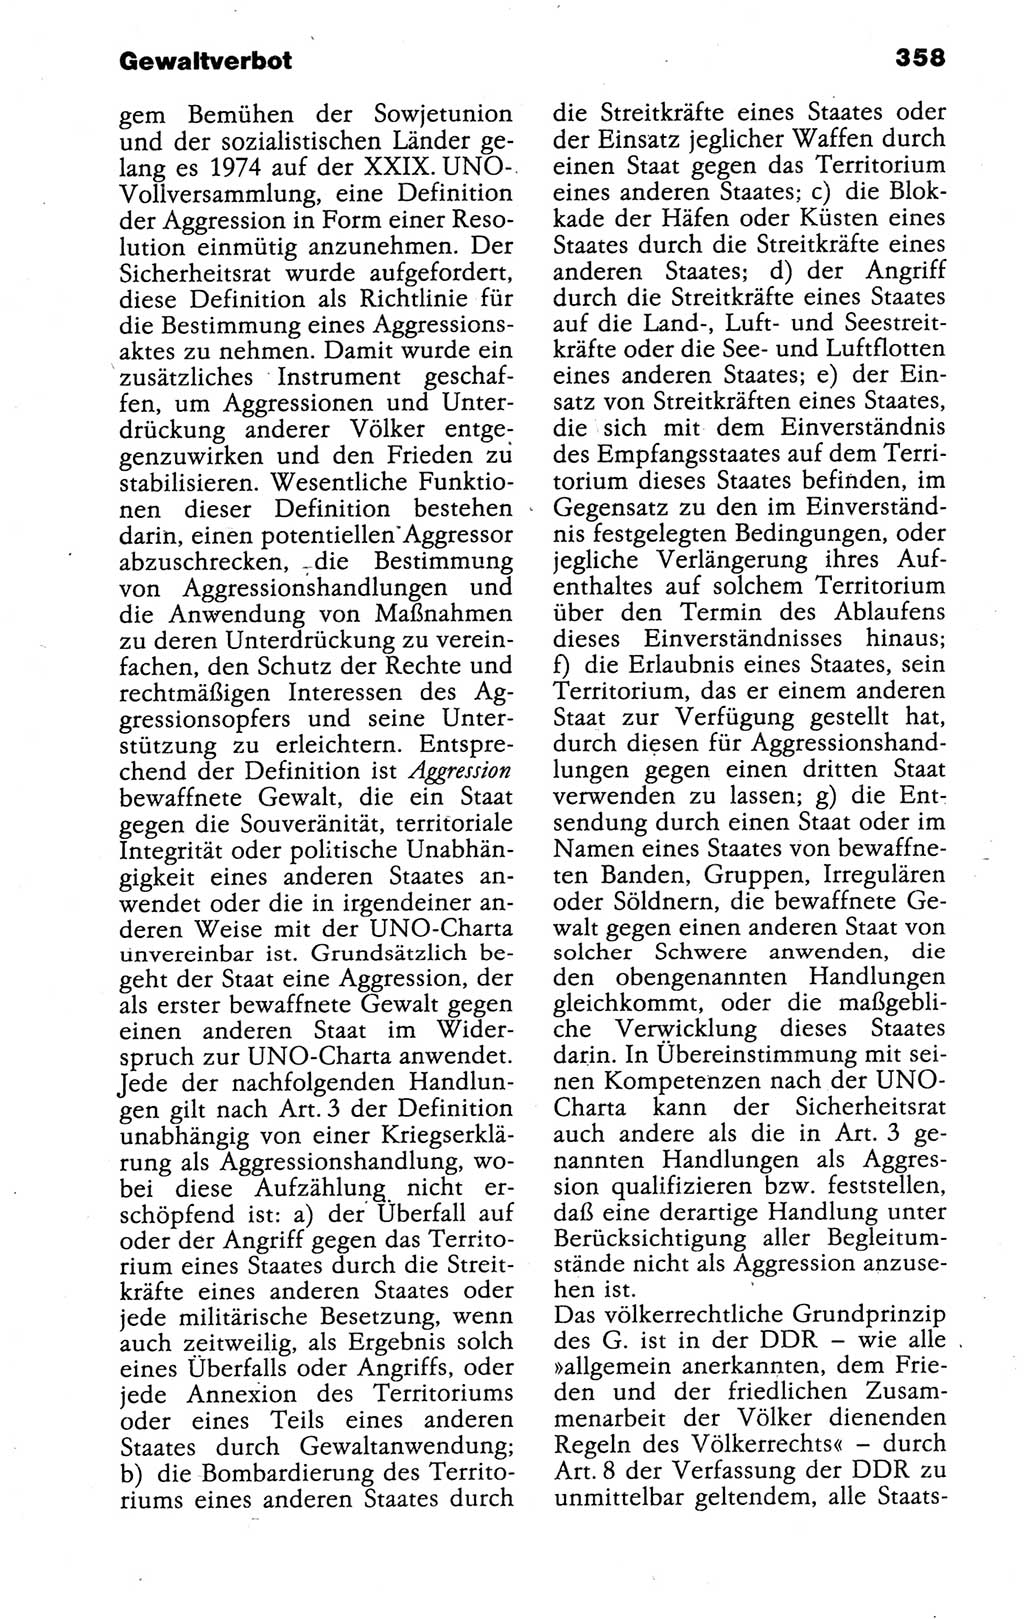 Kleines politisches Wörterbuch [Deutsche Demokratische Republik (DDR)] 1988, Seite 358 (Kl. pol. Wb. DDR 1988, S. 358)